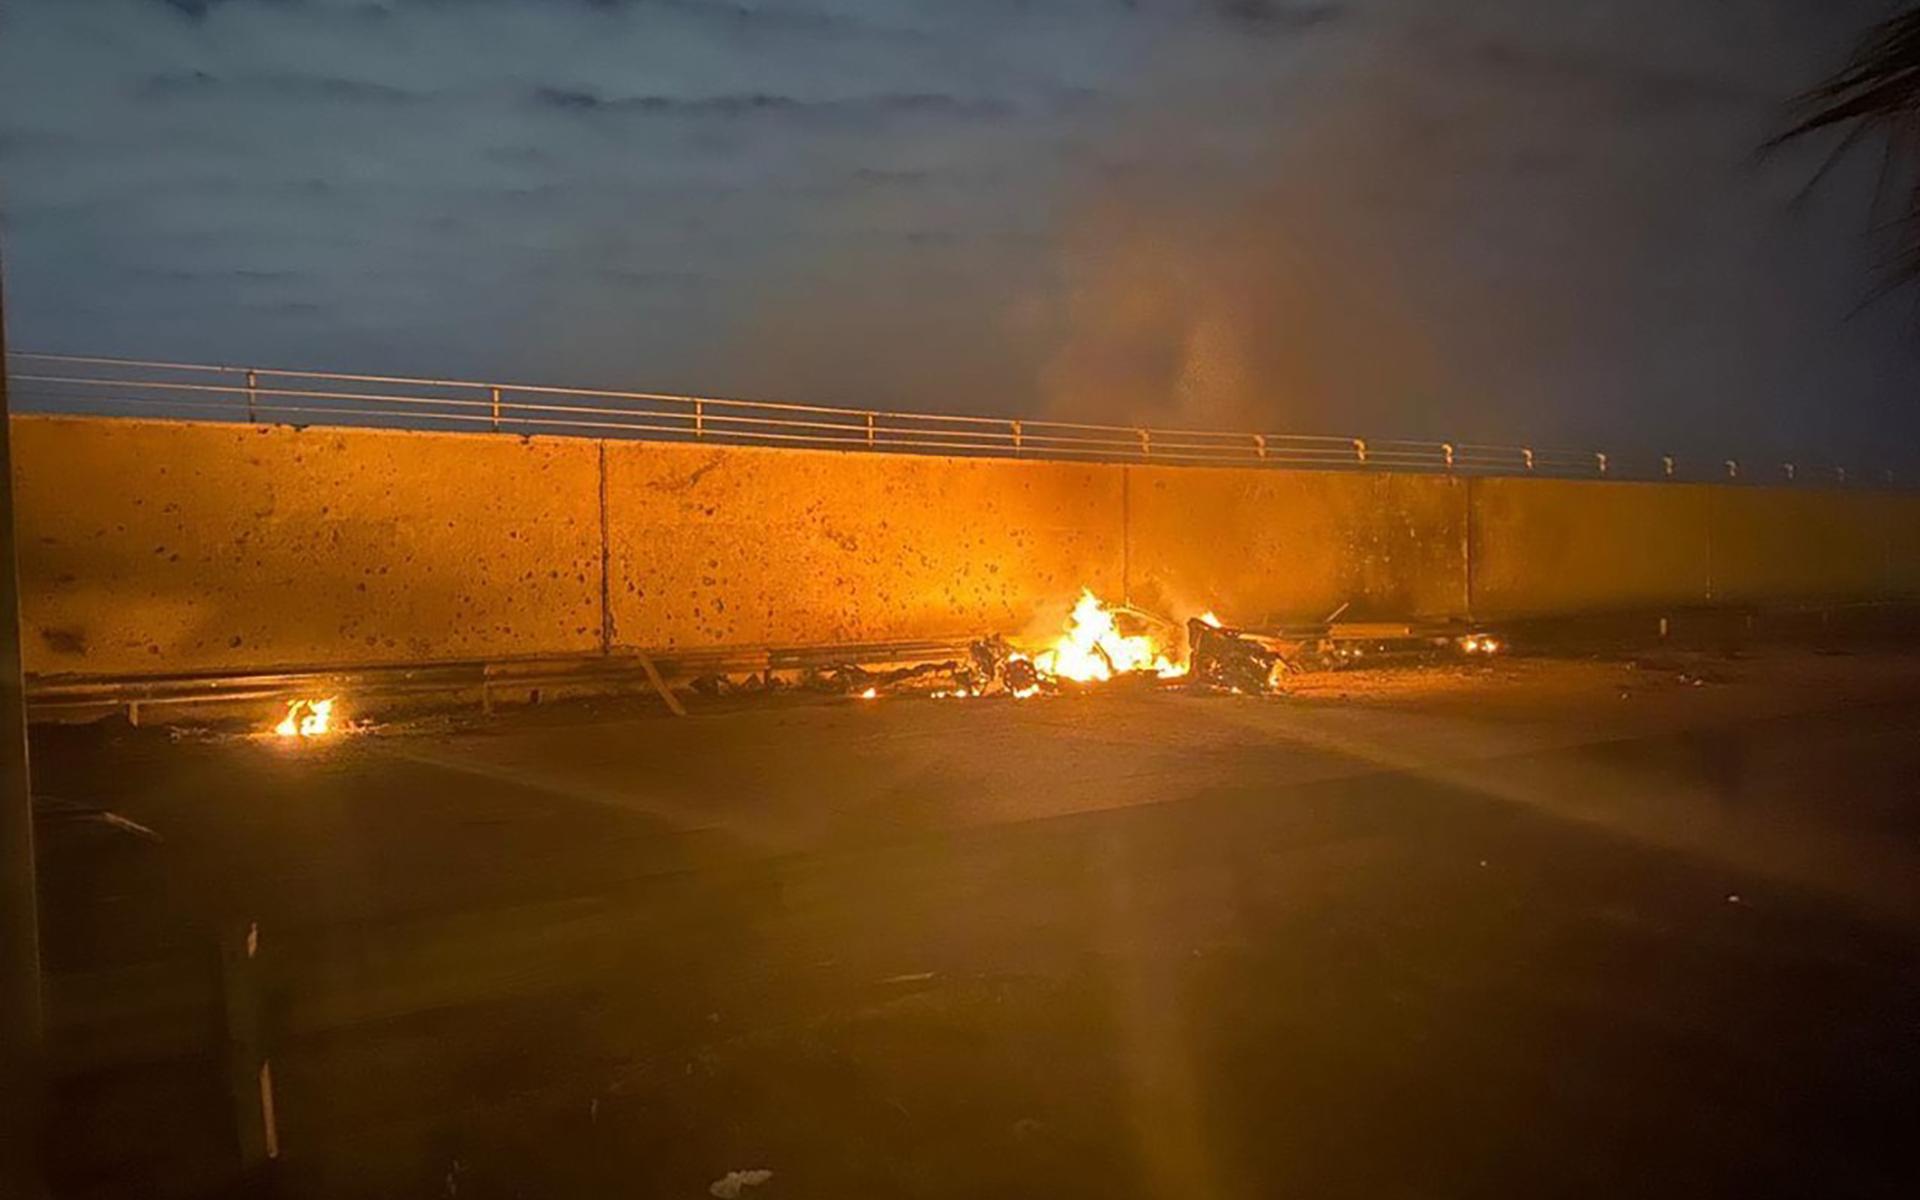 På foton släppta av Iraks premiärministers pressavdelning ses ett brinnande fordon vid Bagdads internationella flygplats efter en raketattack tidigt på morgonen den 3 januari. Pentagon har gått ut med att man dödat Qassem Soleimani, chef för Irans specialstyrka Quds.